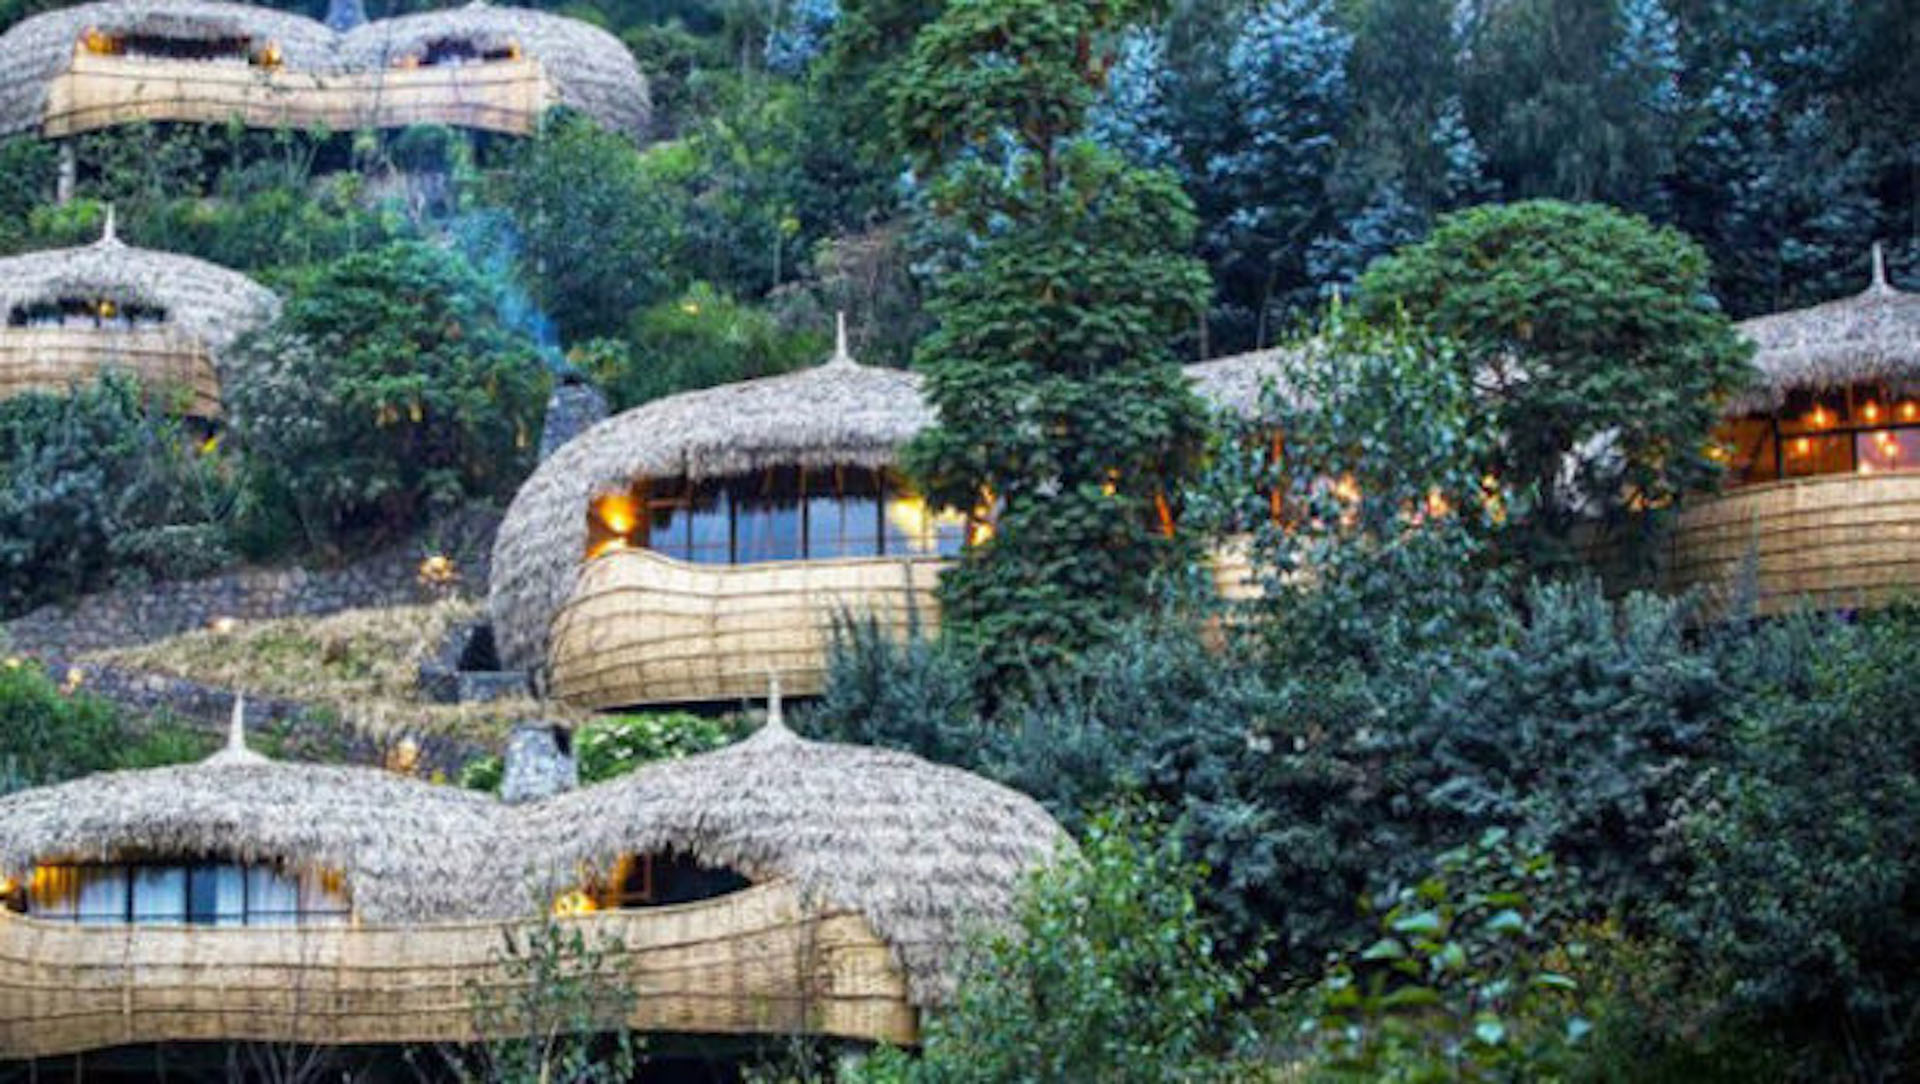 7 hoteles de lujo para dormir en la copa de los árboles - Infobae